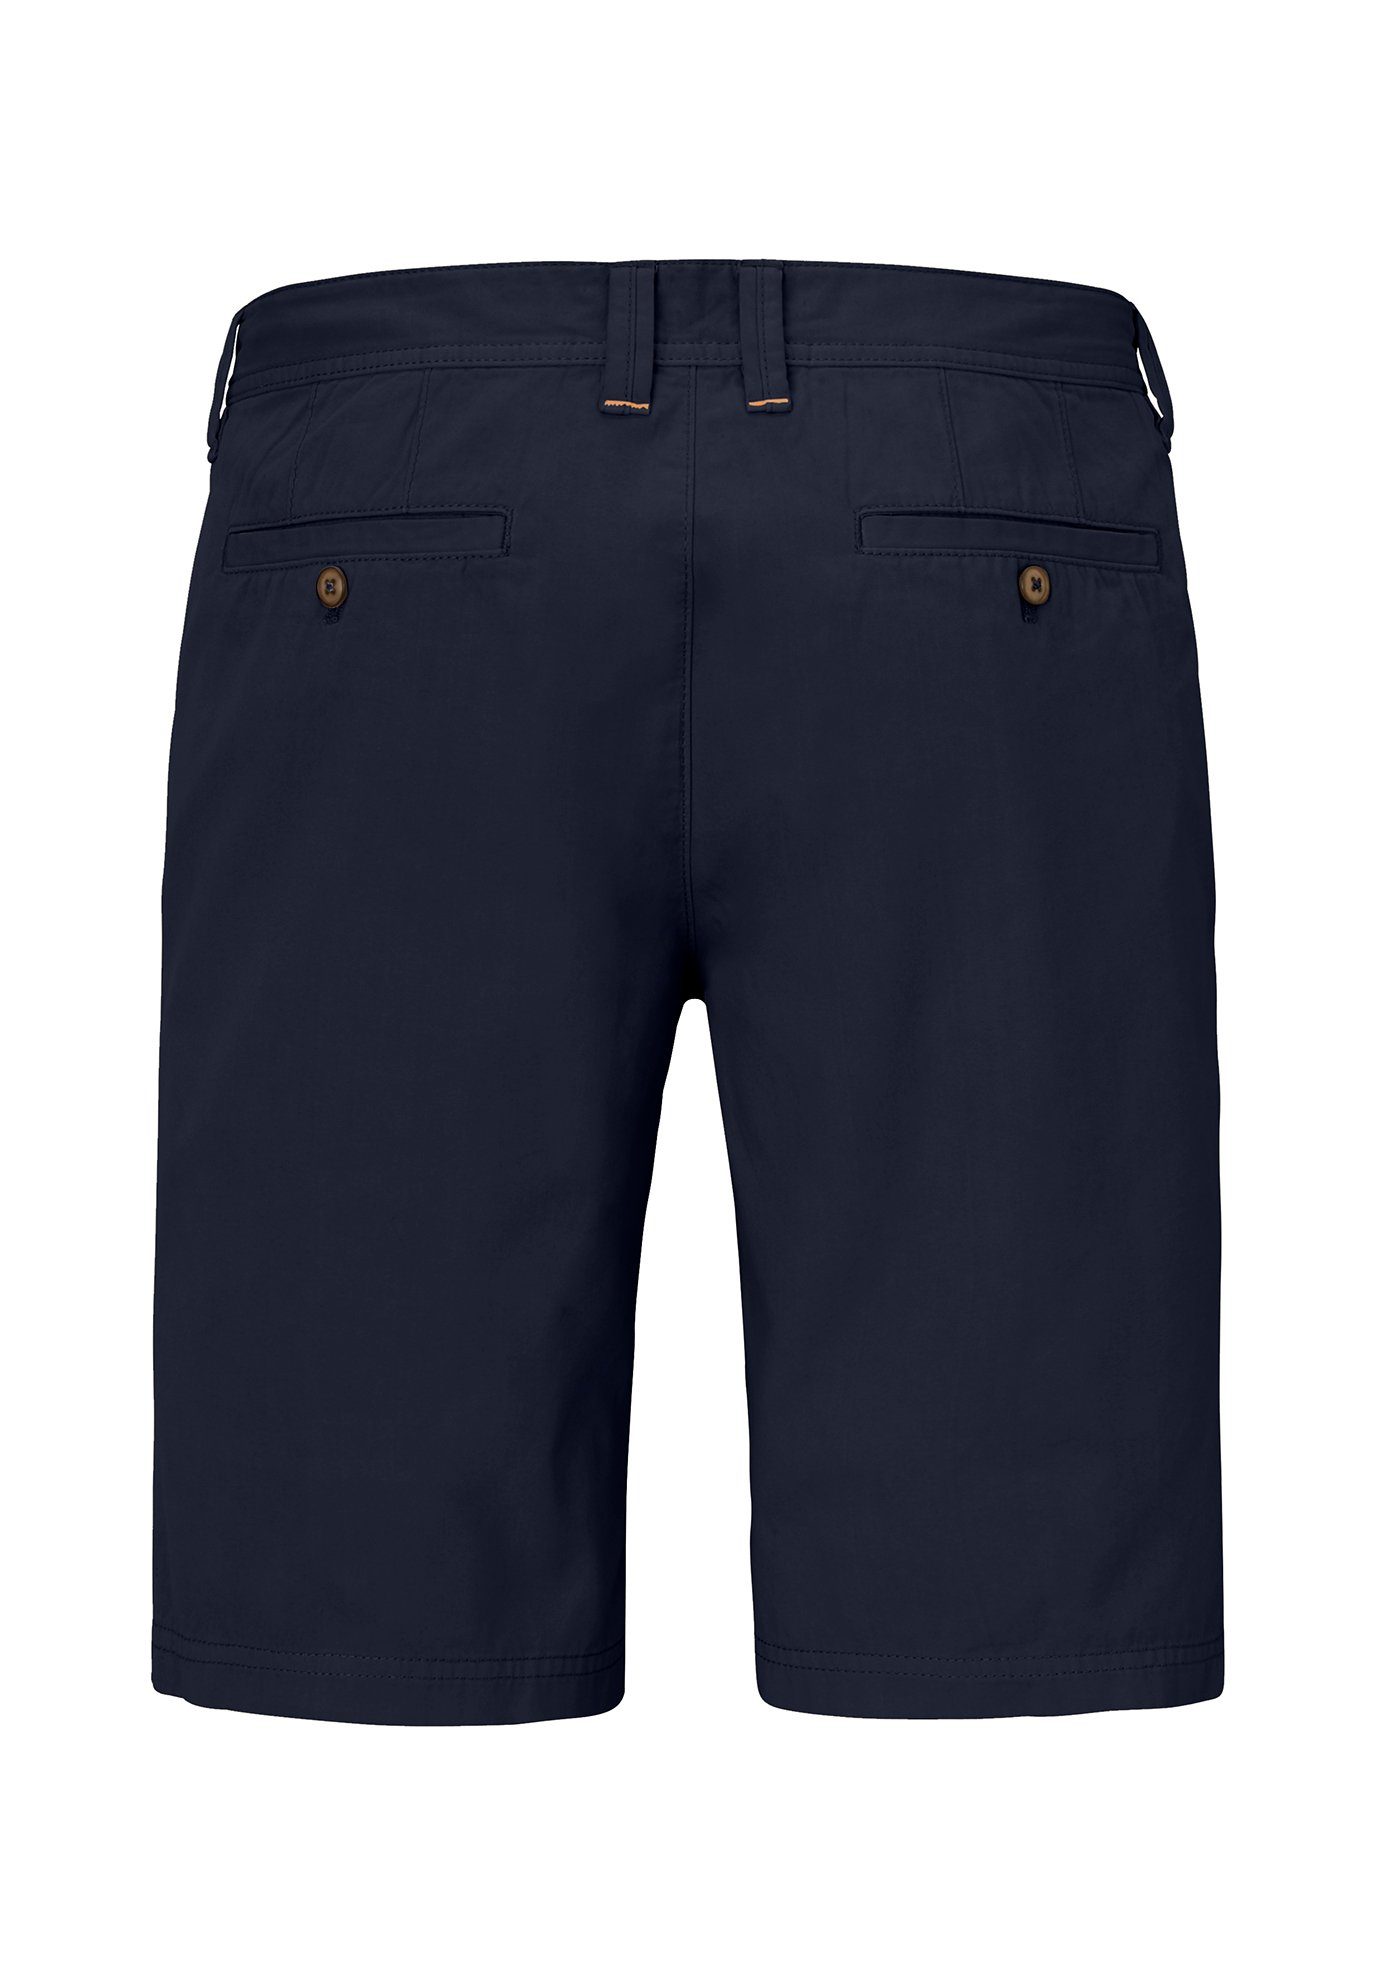 navy Baumwolle Shorts sommerliche Redpoint aus Chinoshorts Surray reiner